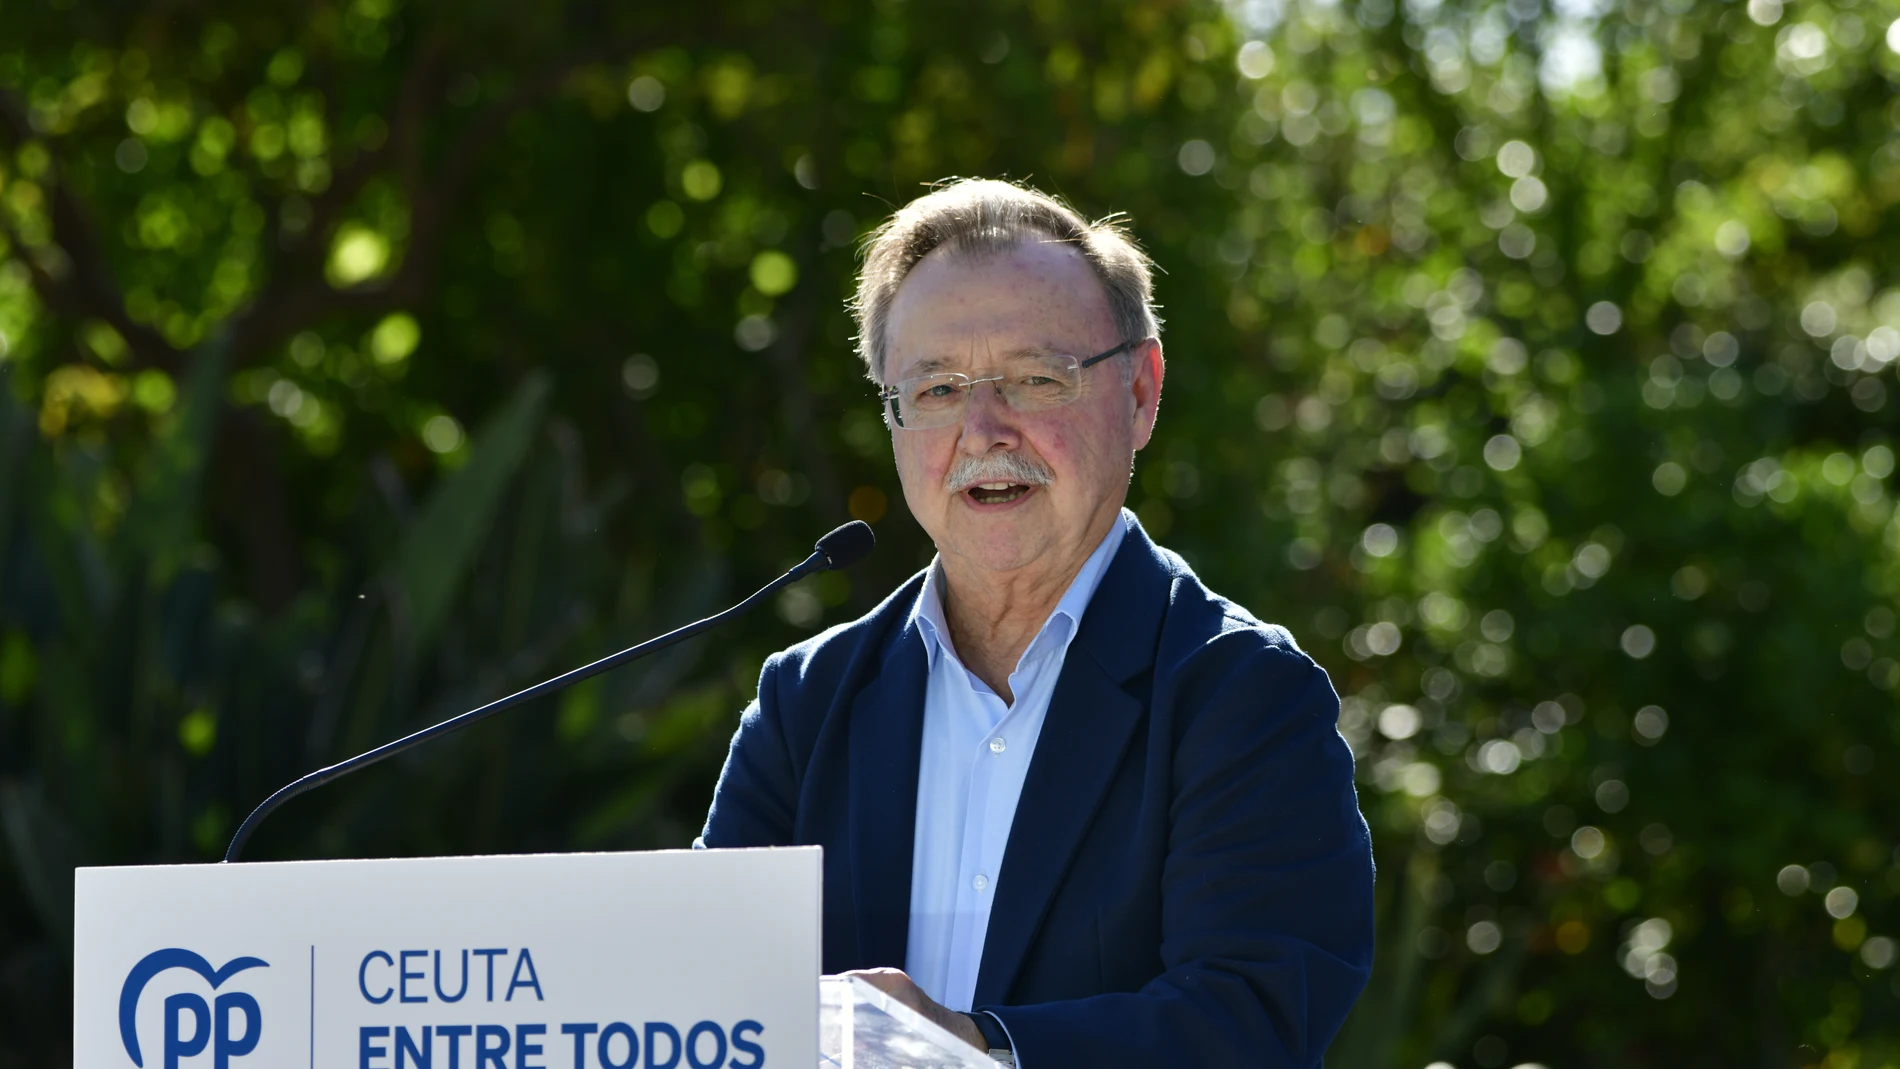 Quién es Juan Vivas, el presidente de Ceuta que echa de menos su mayoría absoluta 